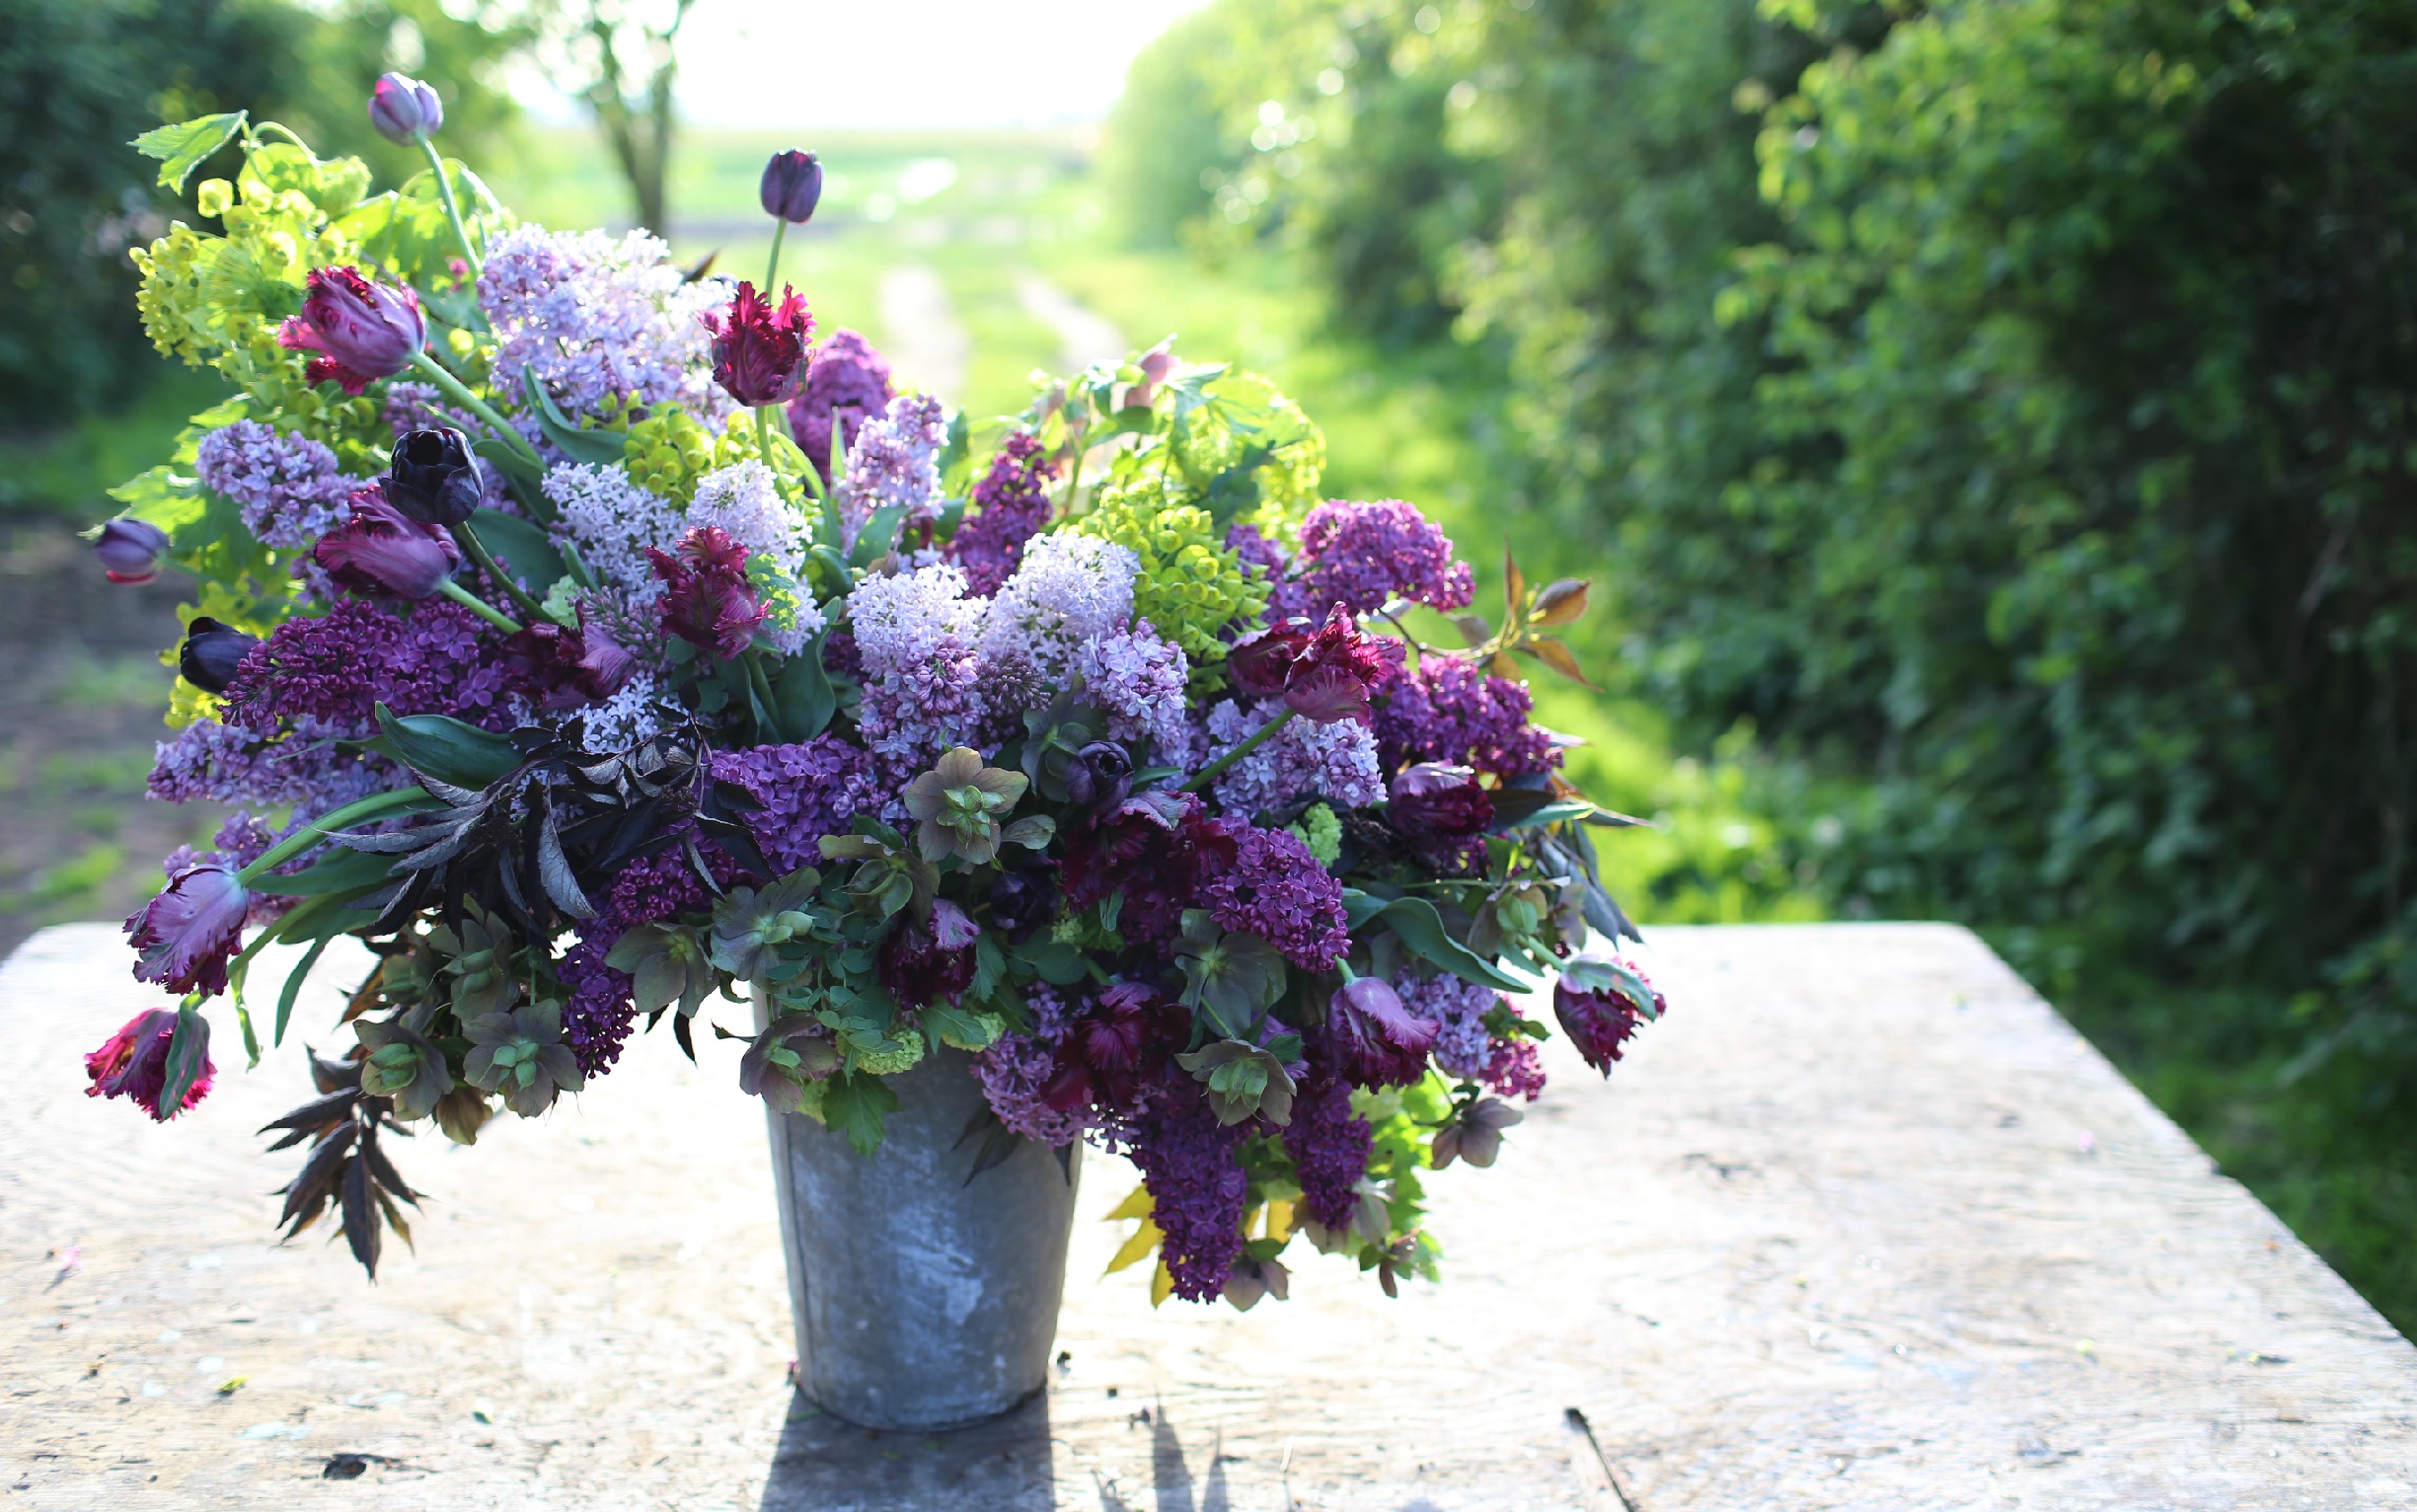 A bucket of purple flowers